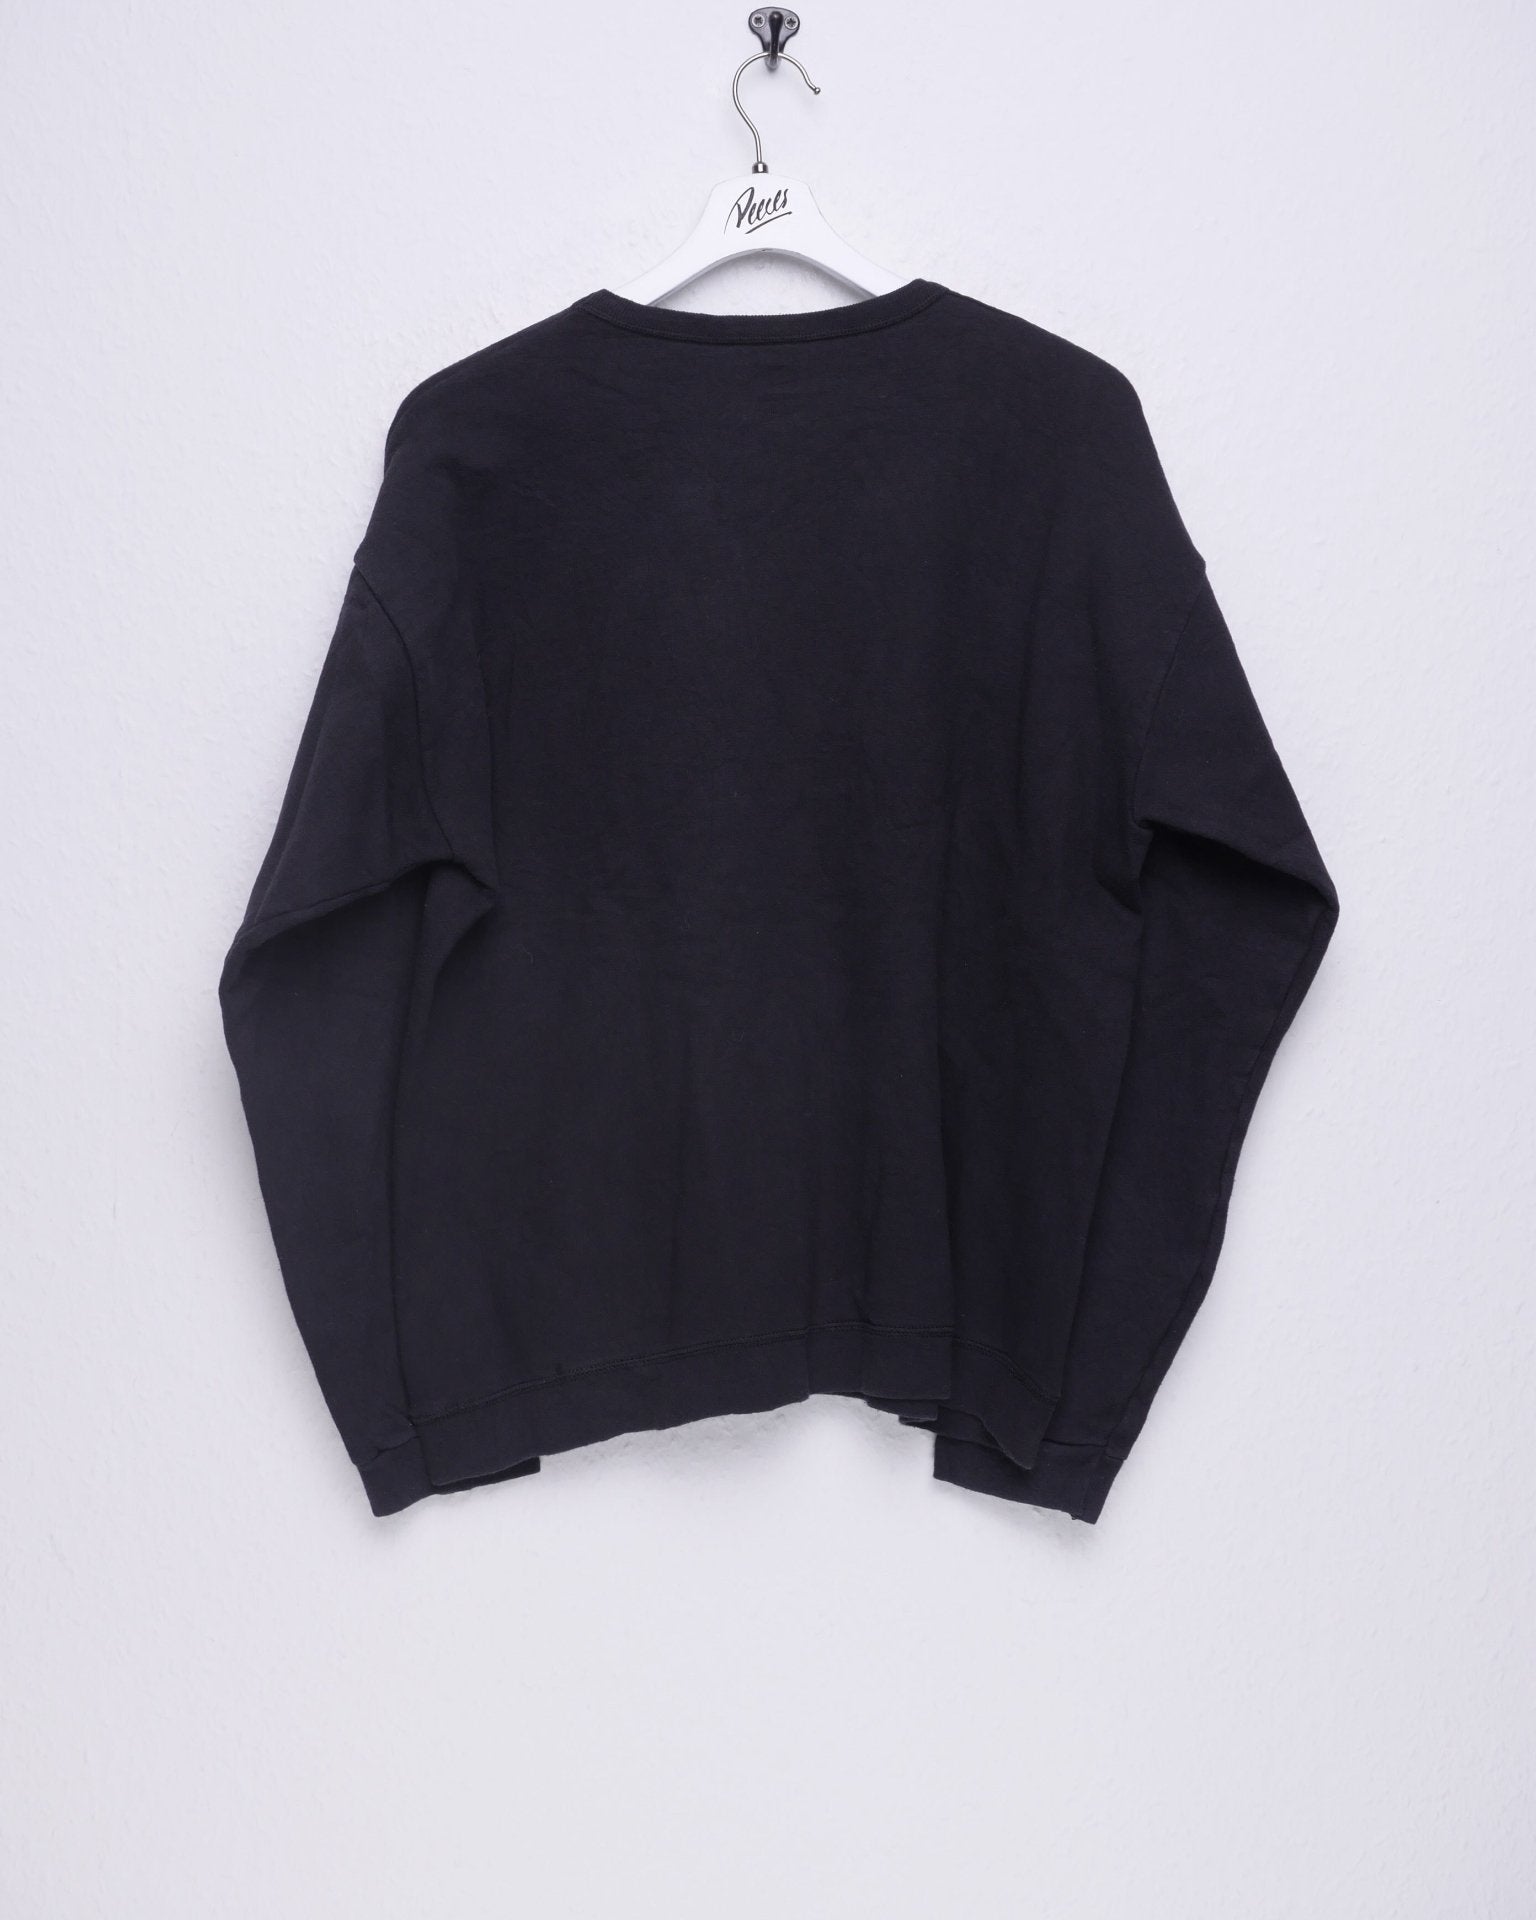 Vintage basic black Sweater - Peeces